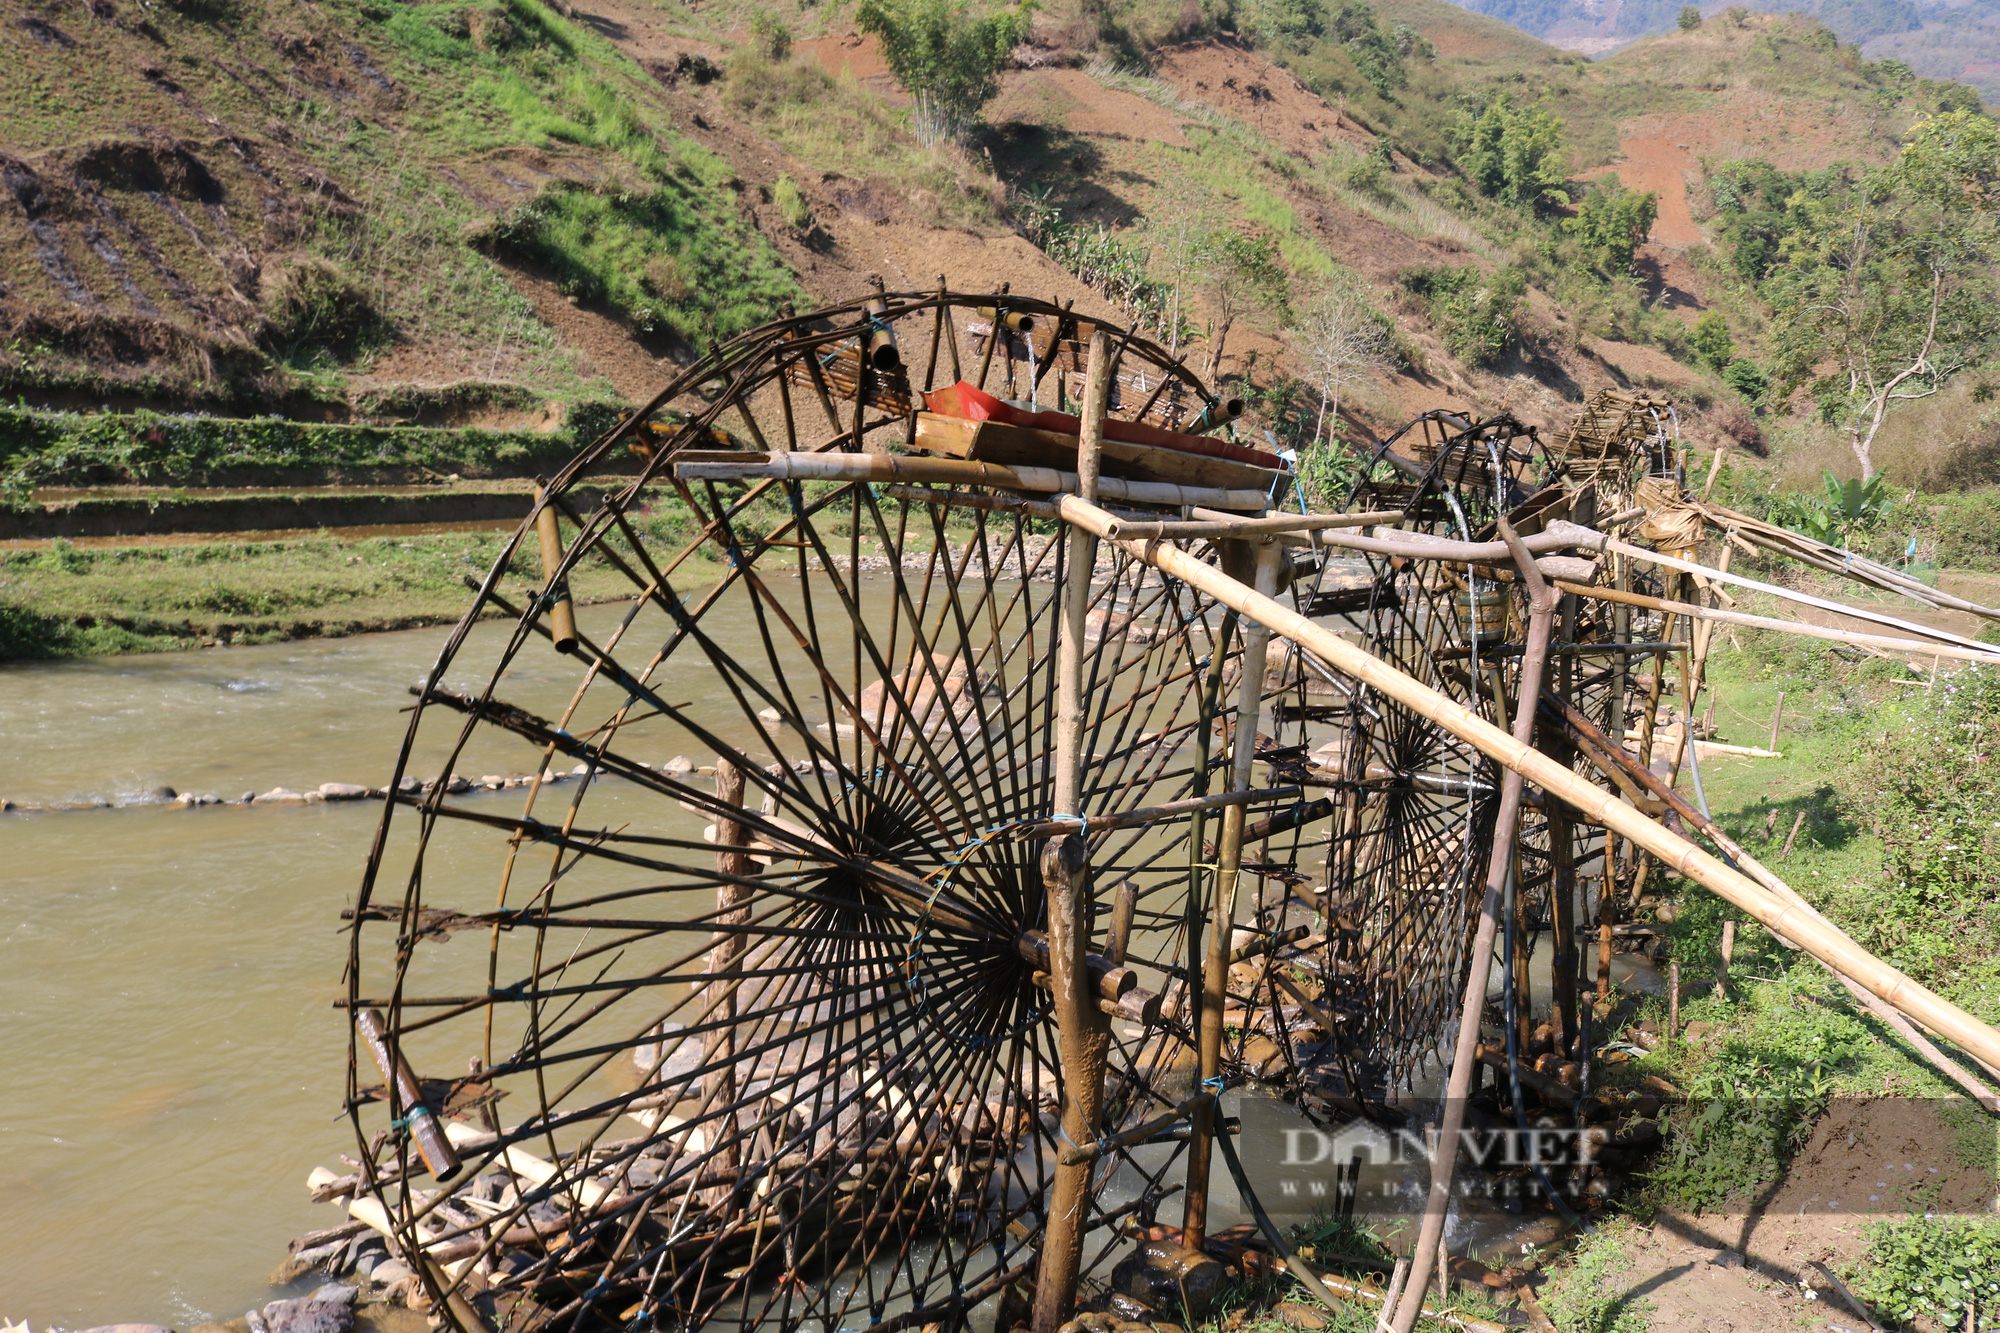 Chiếc cọn nước trị giá gần 4 triệu đồng hứa hẹn về một mùa vàng bội thu cho nông dân vùng cao Sơn La - Ảnh 7.